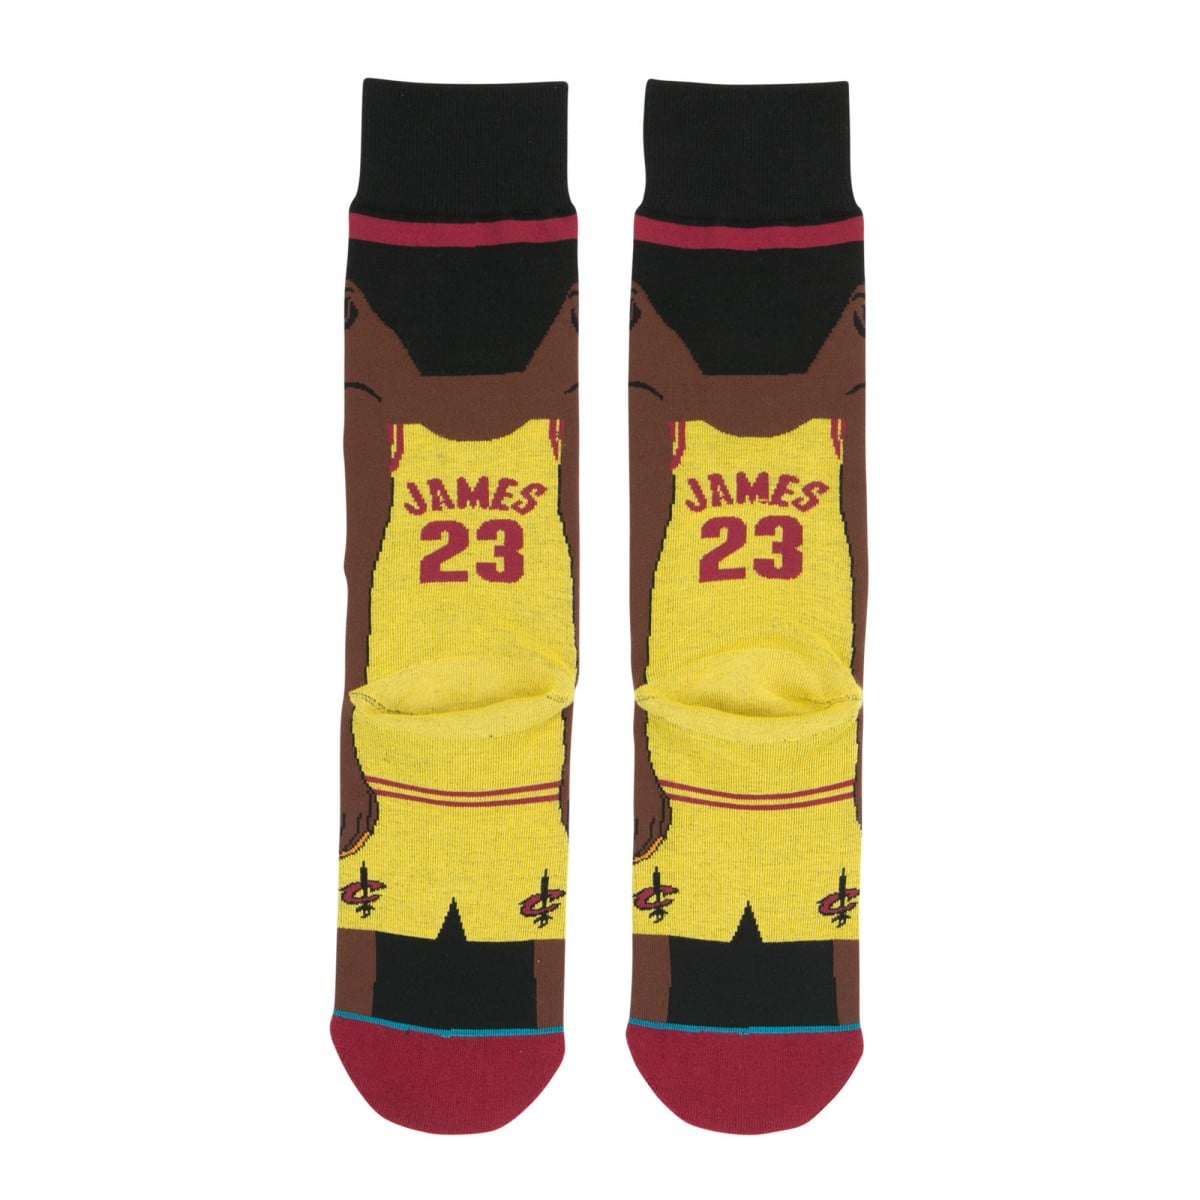 STANCE 襪子 – NBA L. JAMES 勒布朗 · 詹姆士 卡通款 男襪 – M545C16LJA 7